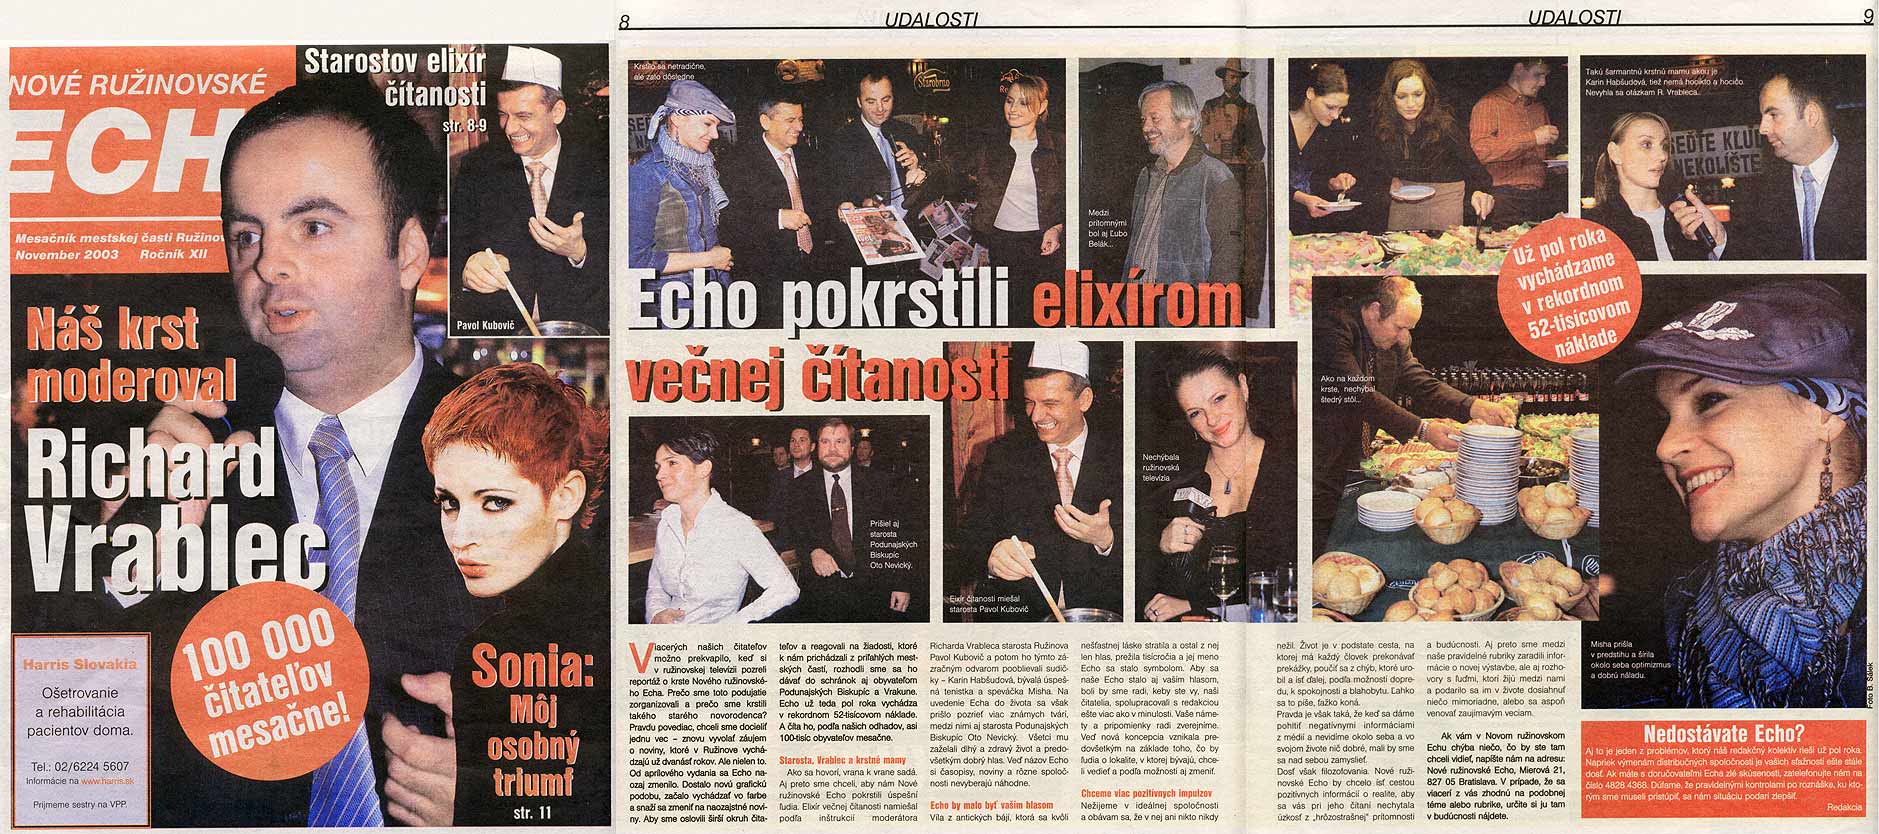 Ružinovské ECHO November 2003: Echo pokrstili elixírom večnej čítanosti